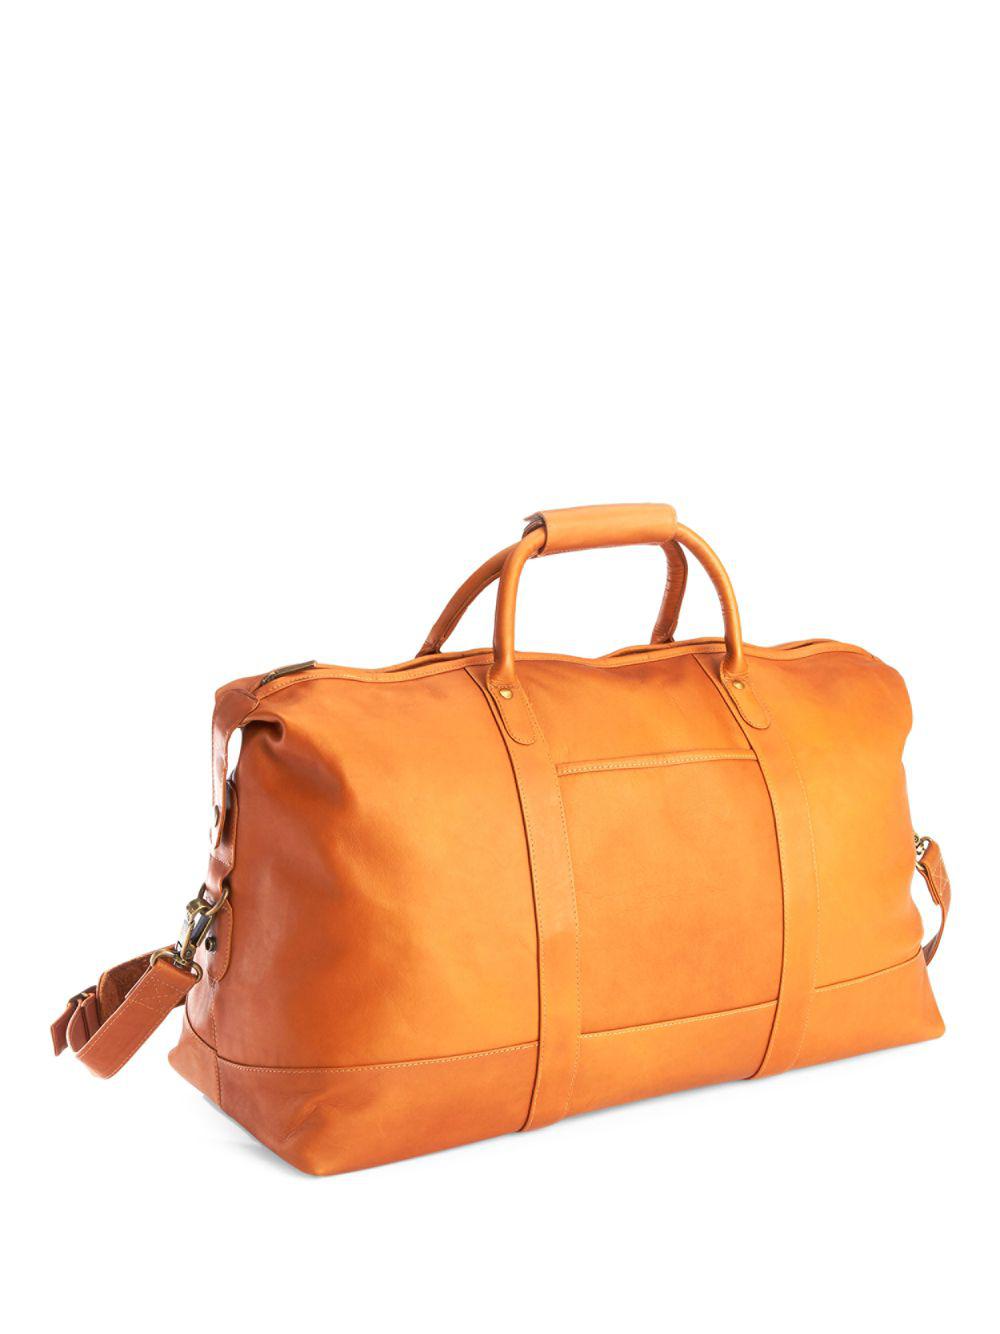 Royce New York Columbian Leather Luxury Weekender Duffel Bag in Tan (Orange) - Lyst